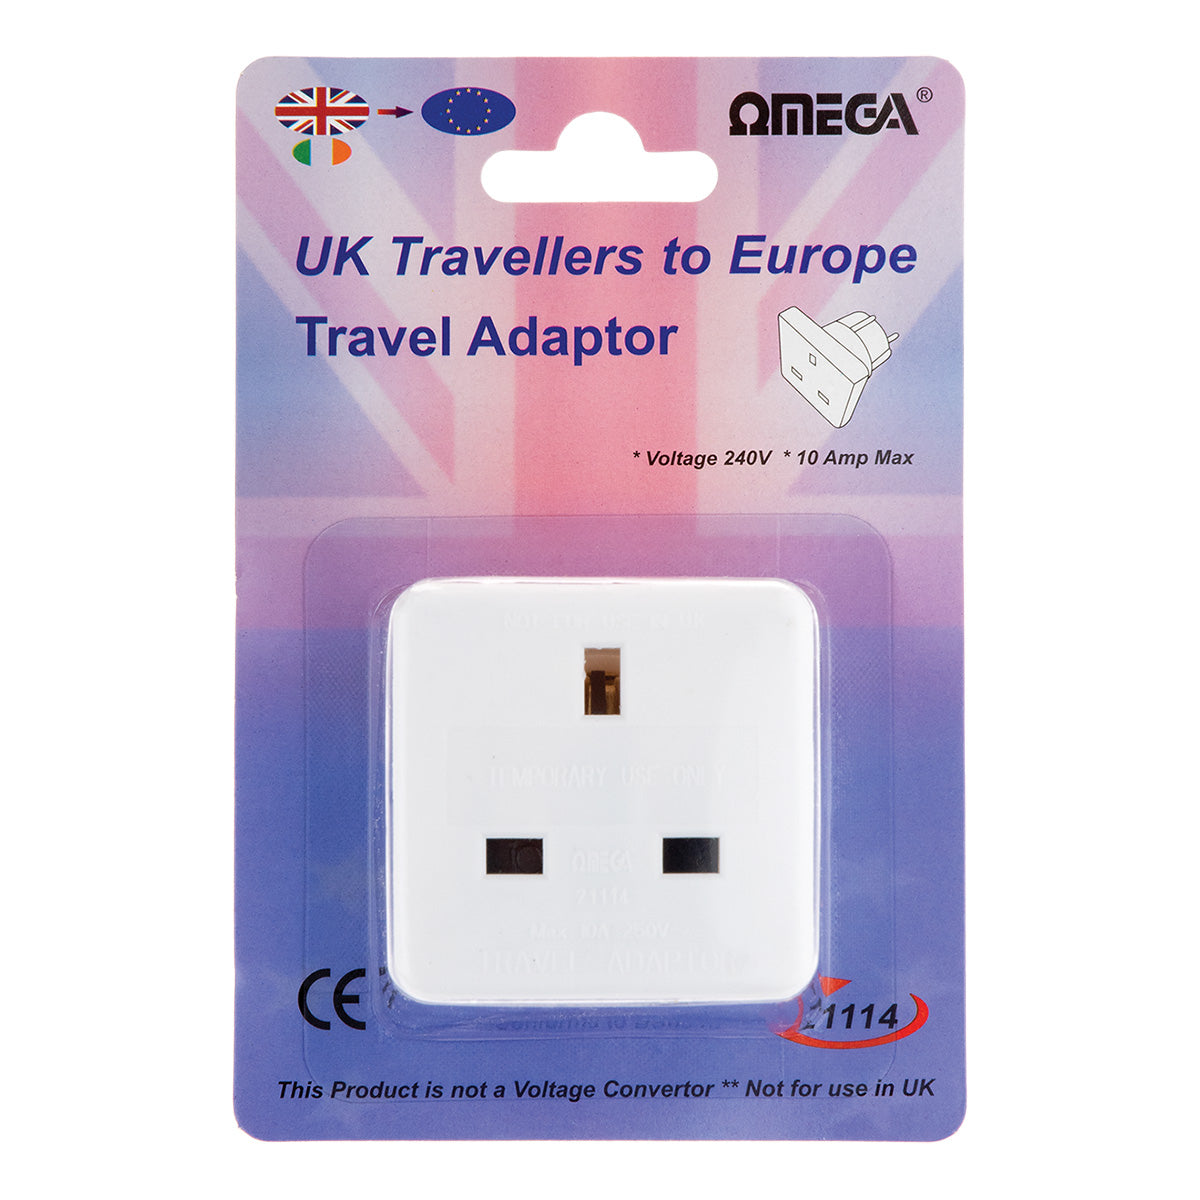 EU Travel Adaptor